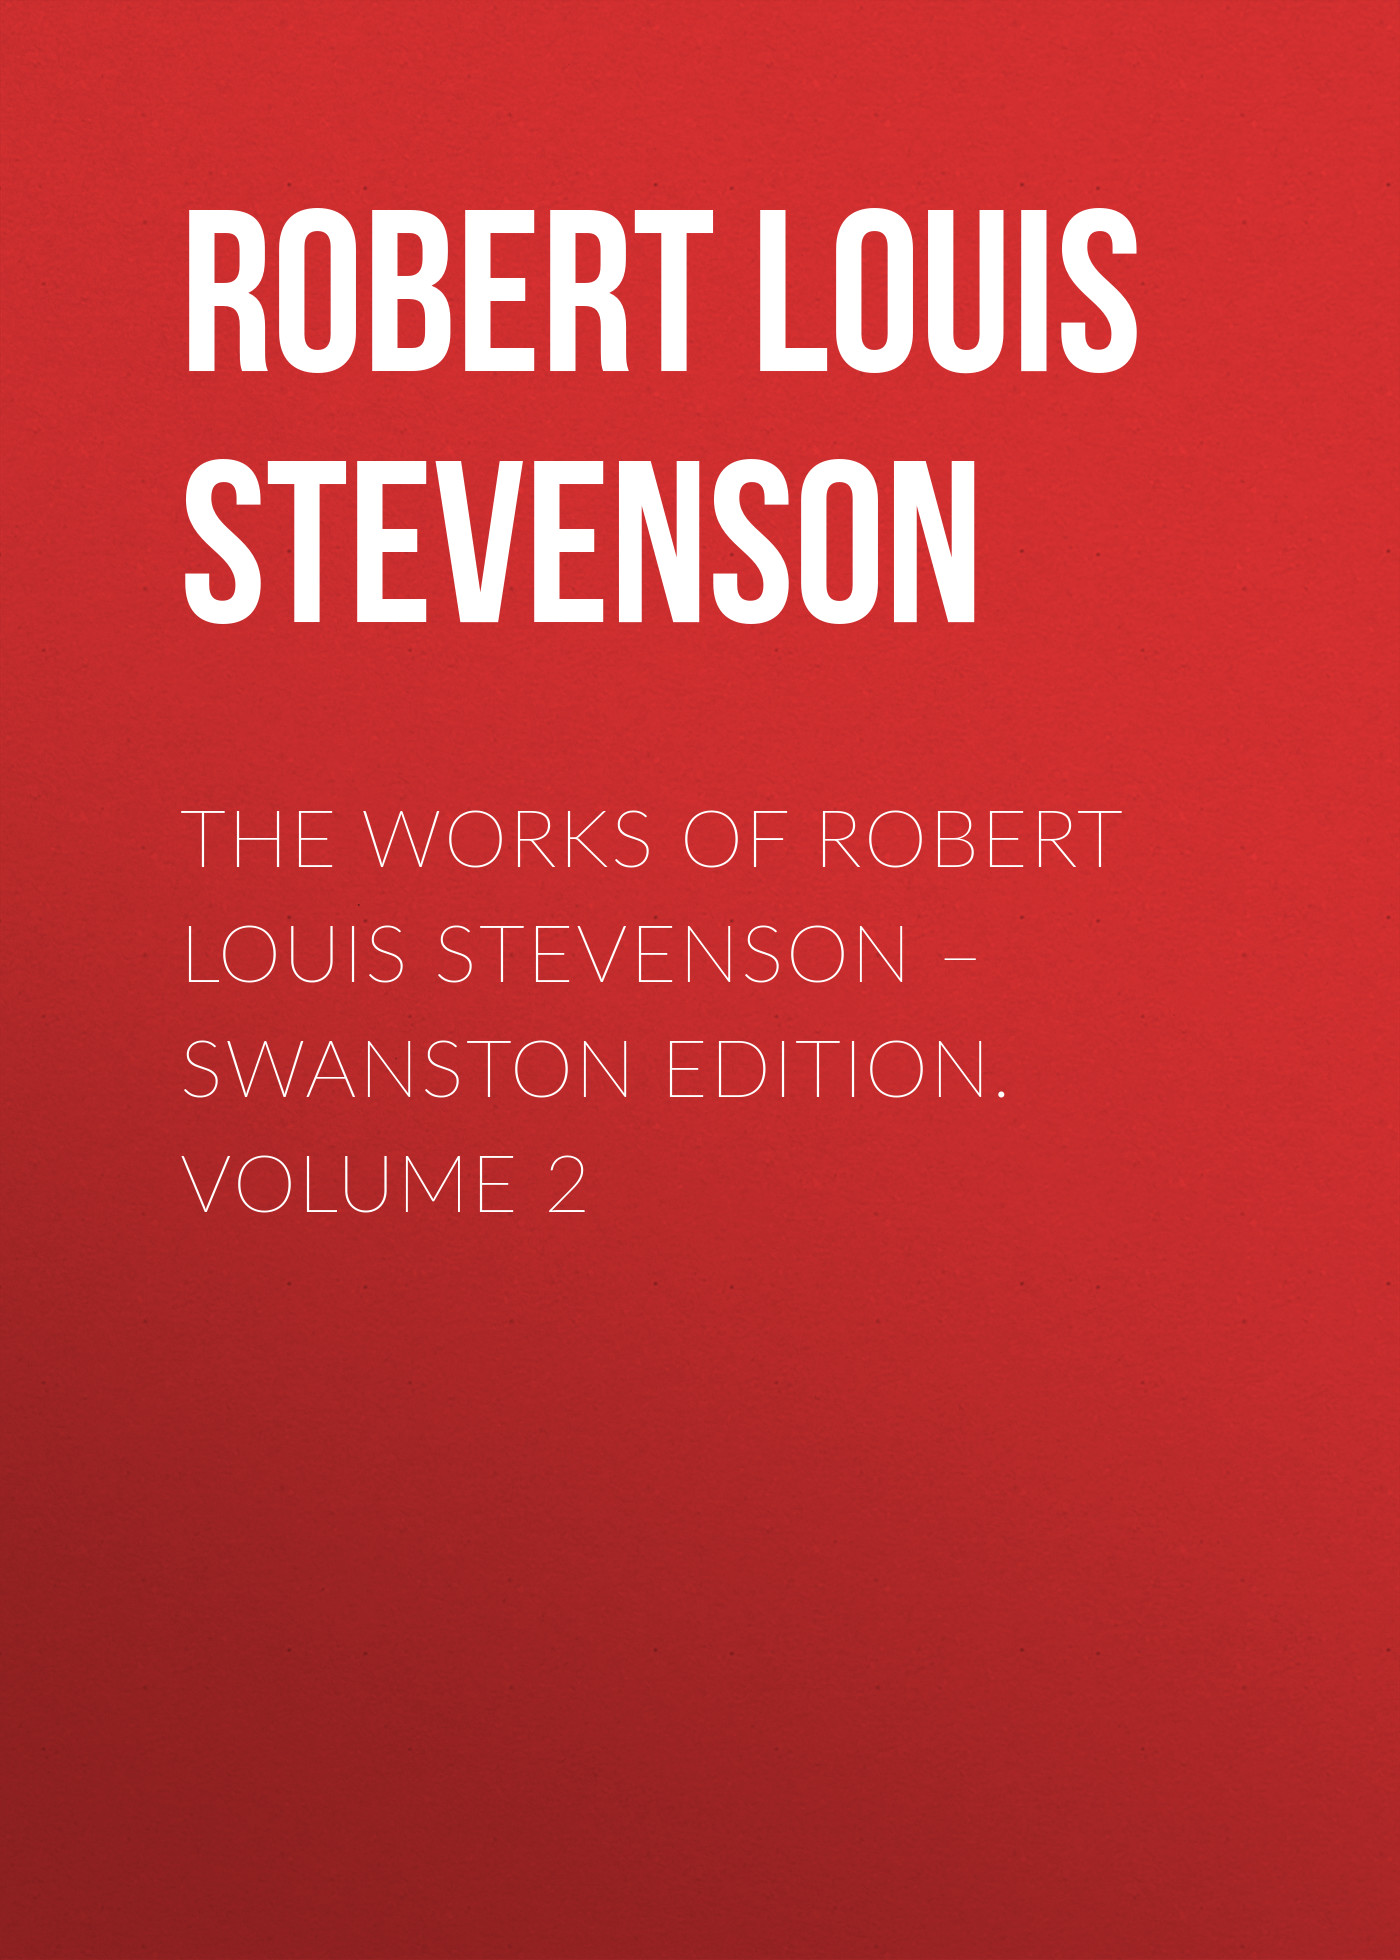 Книга The Works of Robert Louis Stevenson – Swanston Edition. Volume 2 из серии , созданная Robert Stevenson, может относится к жанру Зарубежная классика. Стоимость электронной книги The Works of Robert Louis Stevenson – Swanston Edition. Volume 2 с идентификатором 23153427 составляет 0 руб.